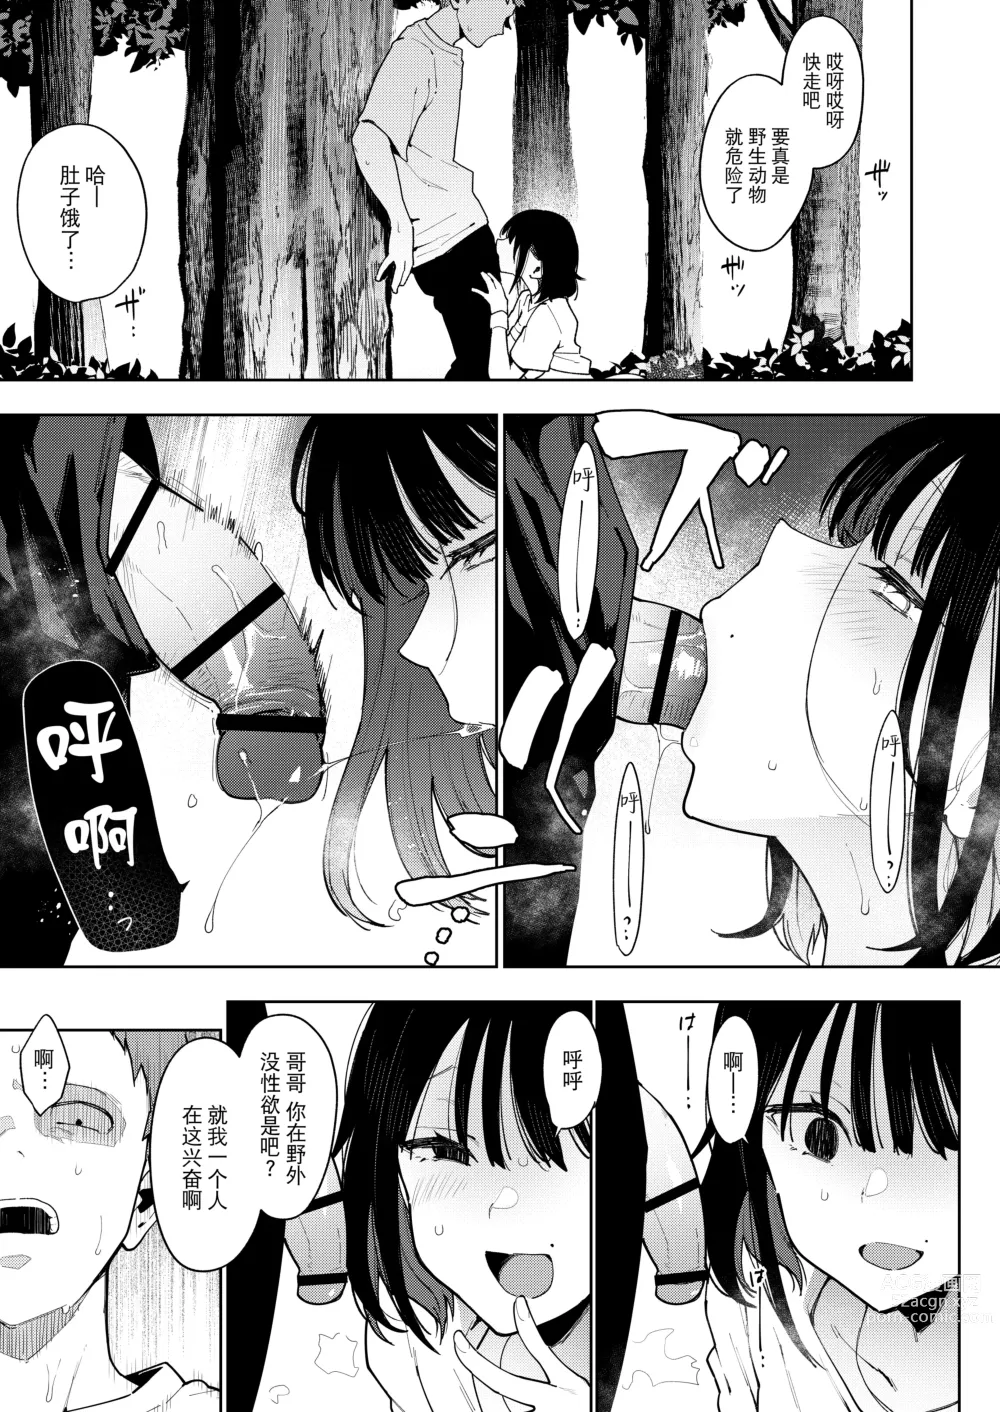 Page 163 of doujinshi Chouko I-V